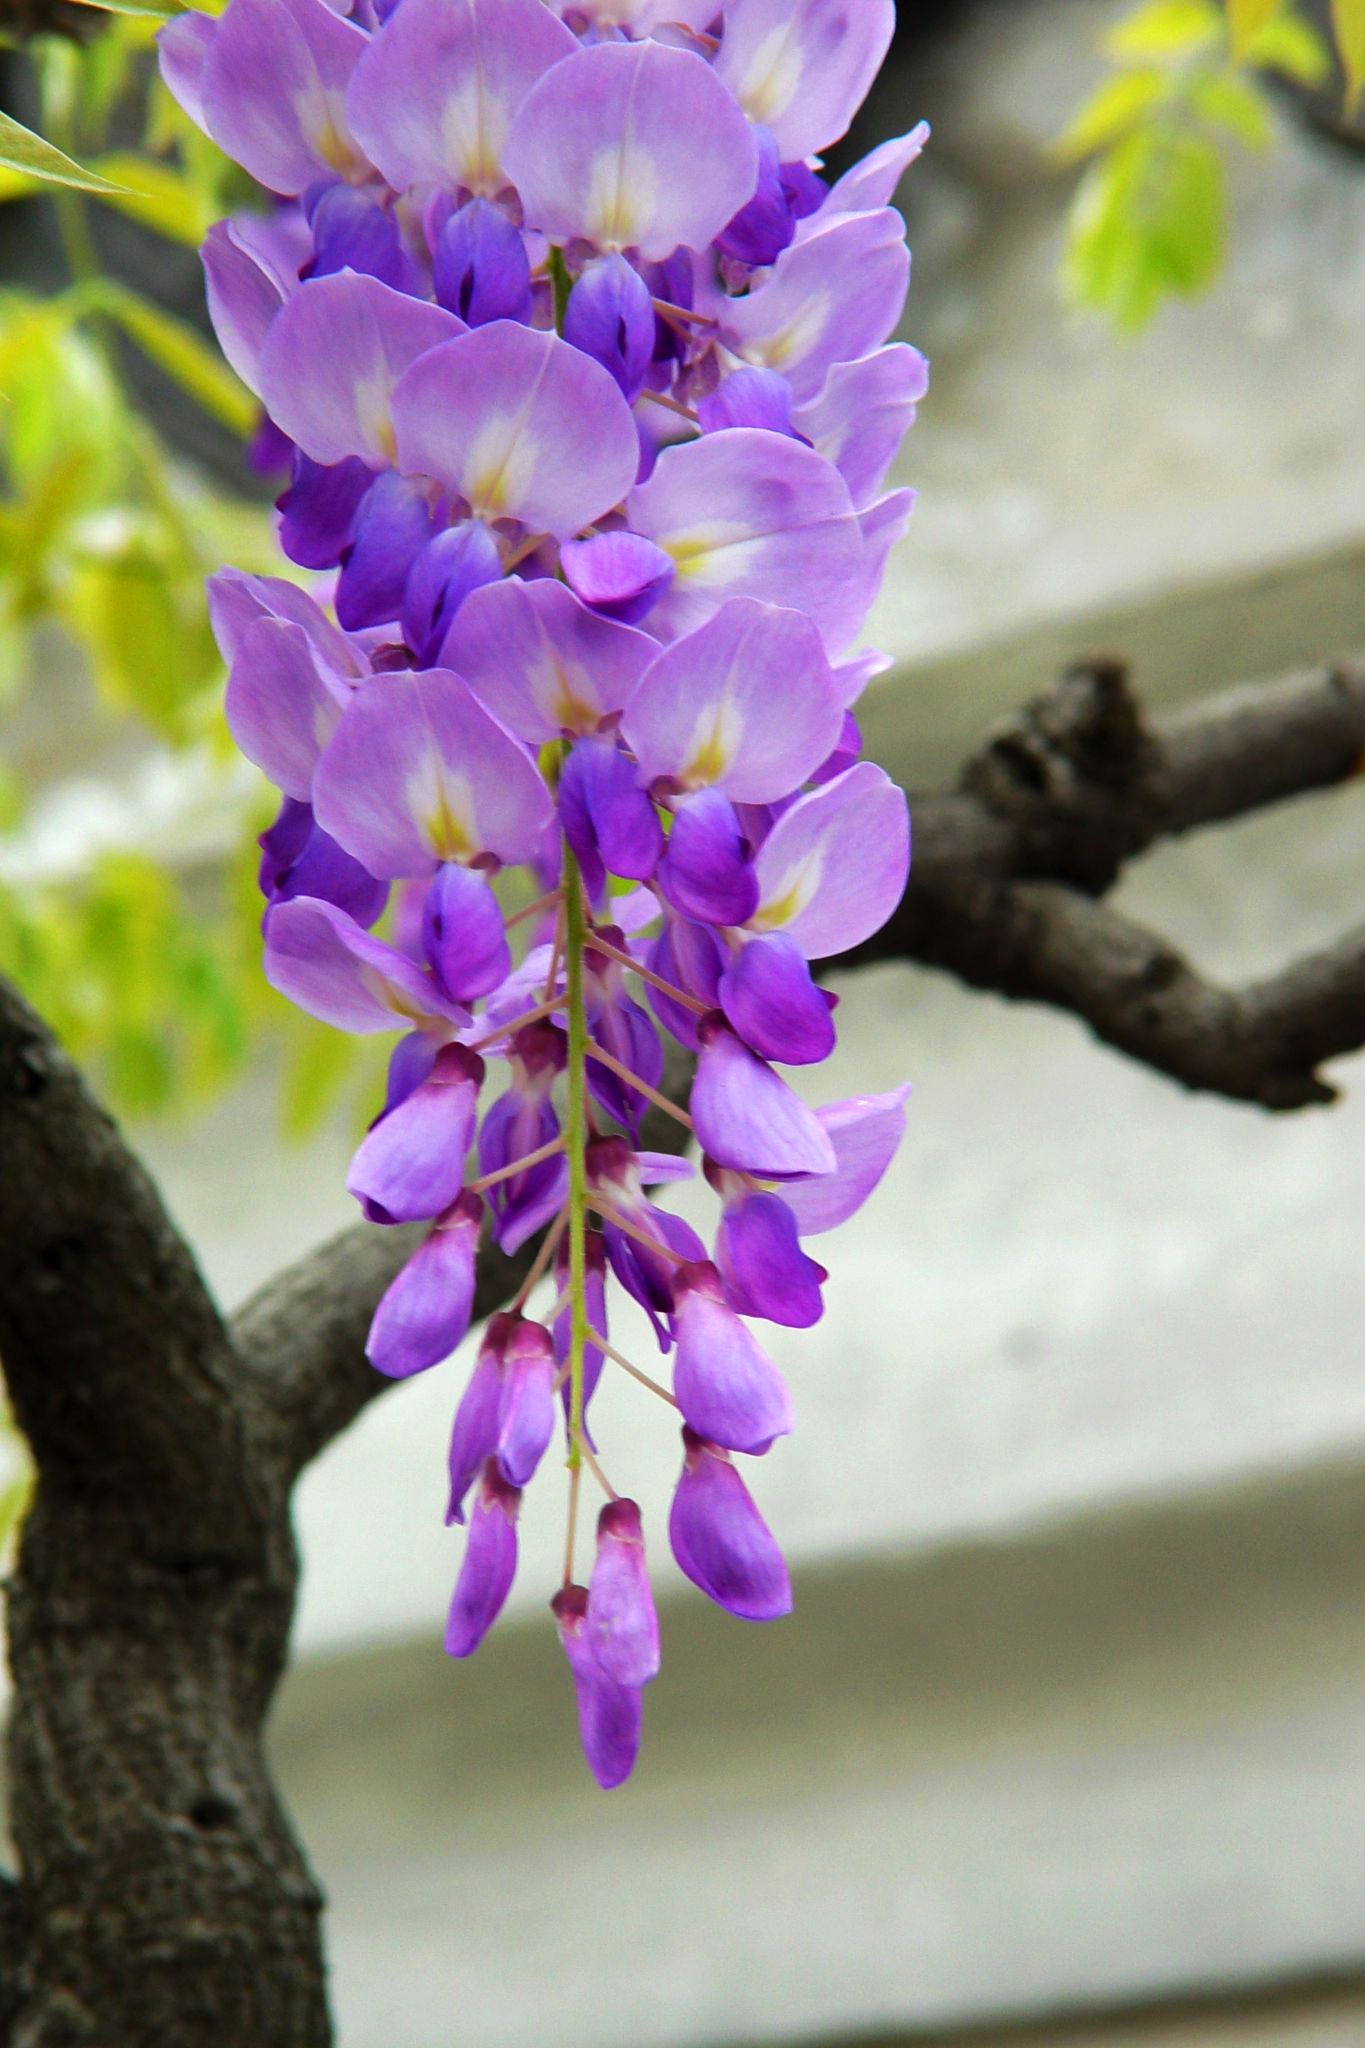 紫茉莉图片_风景花卉的紫茉莉图片大全 - 花卉网